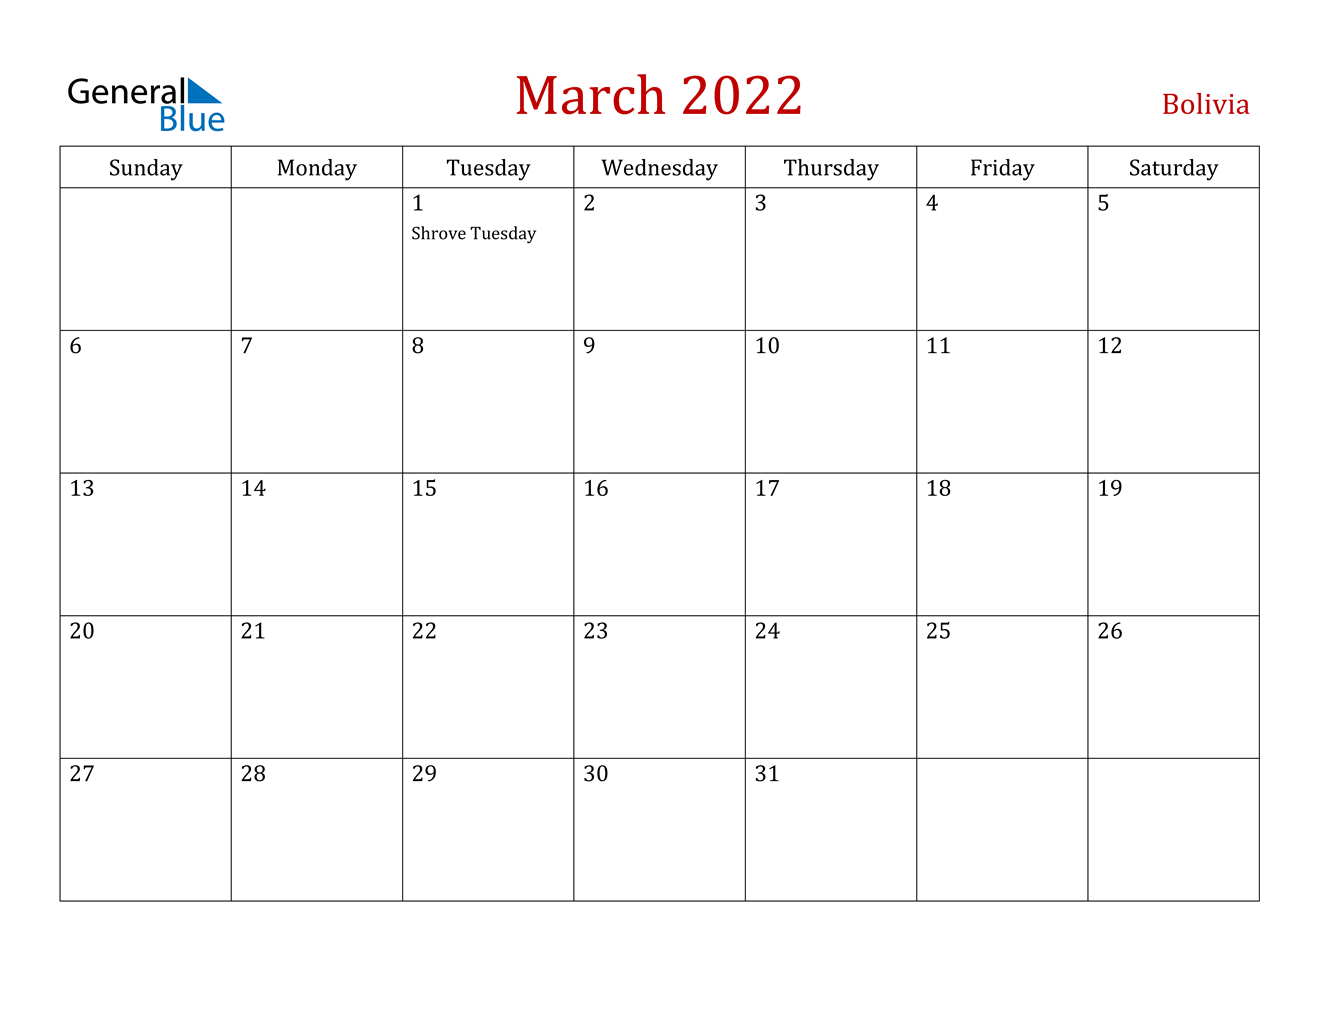 March 2022 Calendar - Bolivia